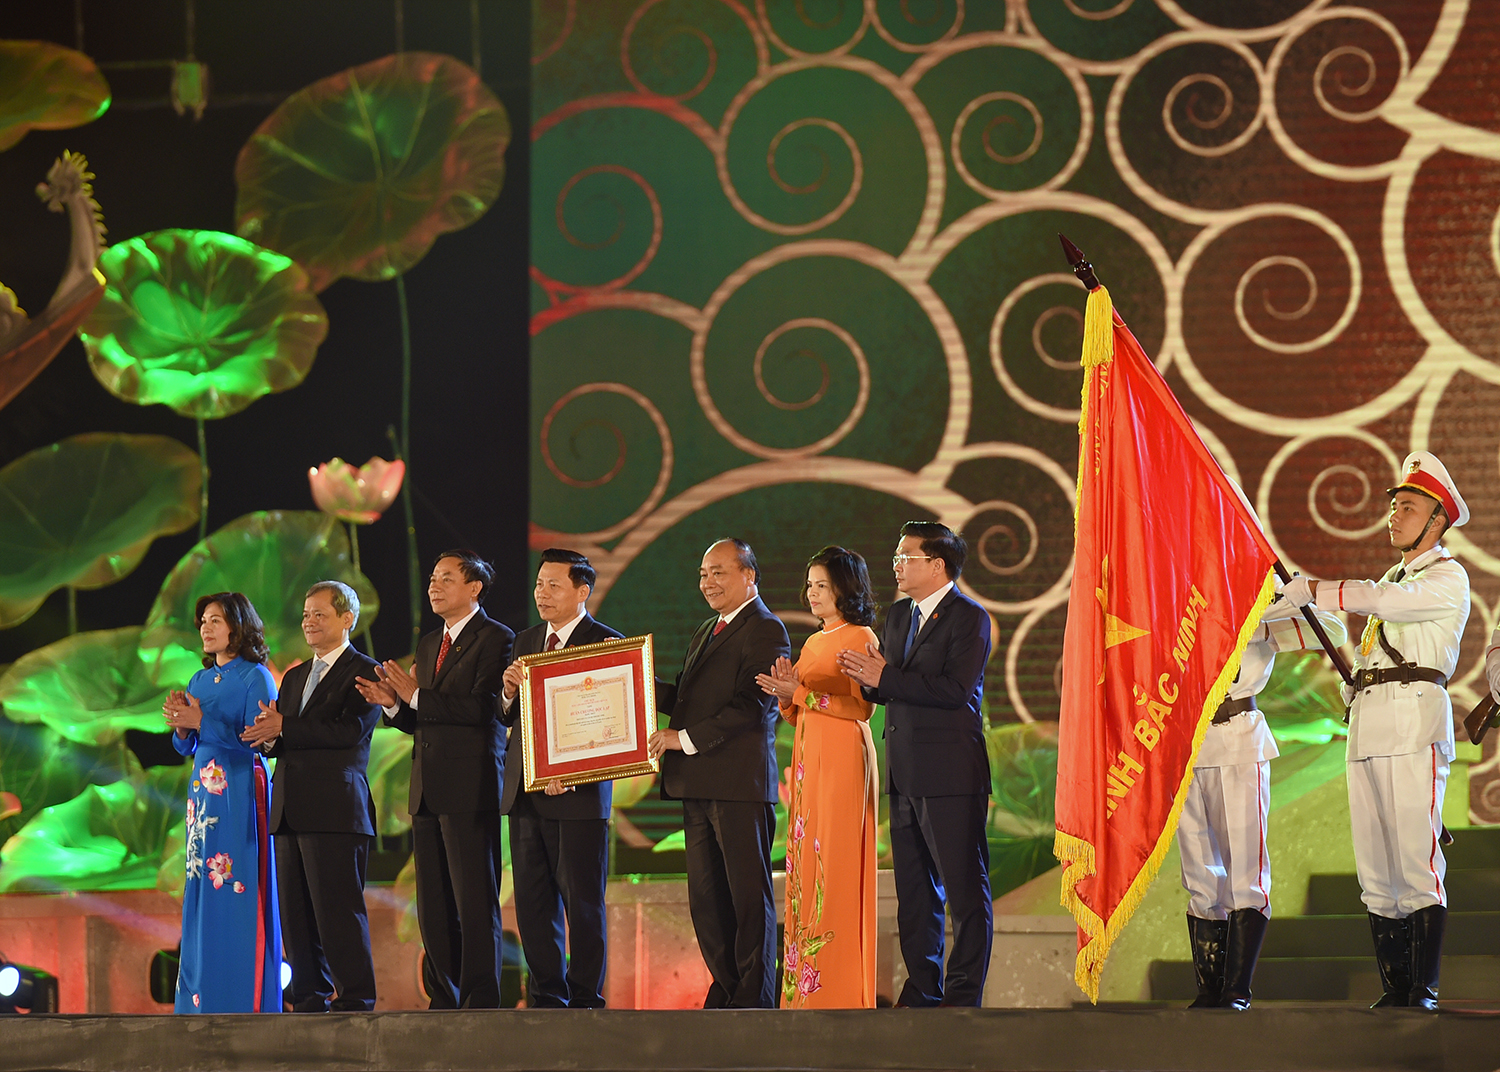  Thủ tướng Nguyễn Xuân Phúc trao Huân chương Độc lập hạng Nhất cho Đảng bộ, chính quyền và nhân dân tỉnh Bắc Ninh. Ảnh: VGP